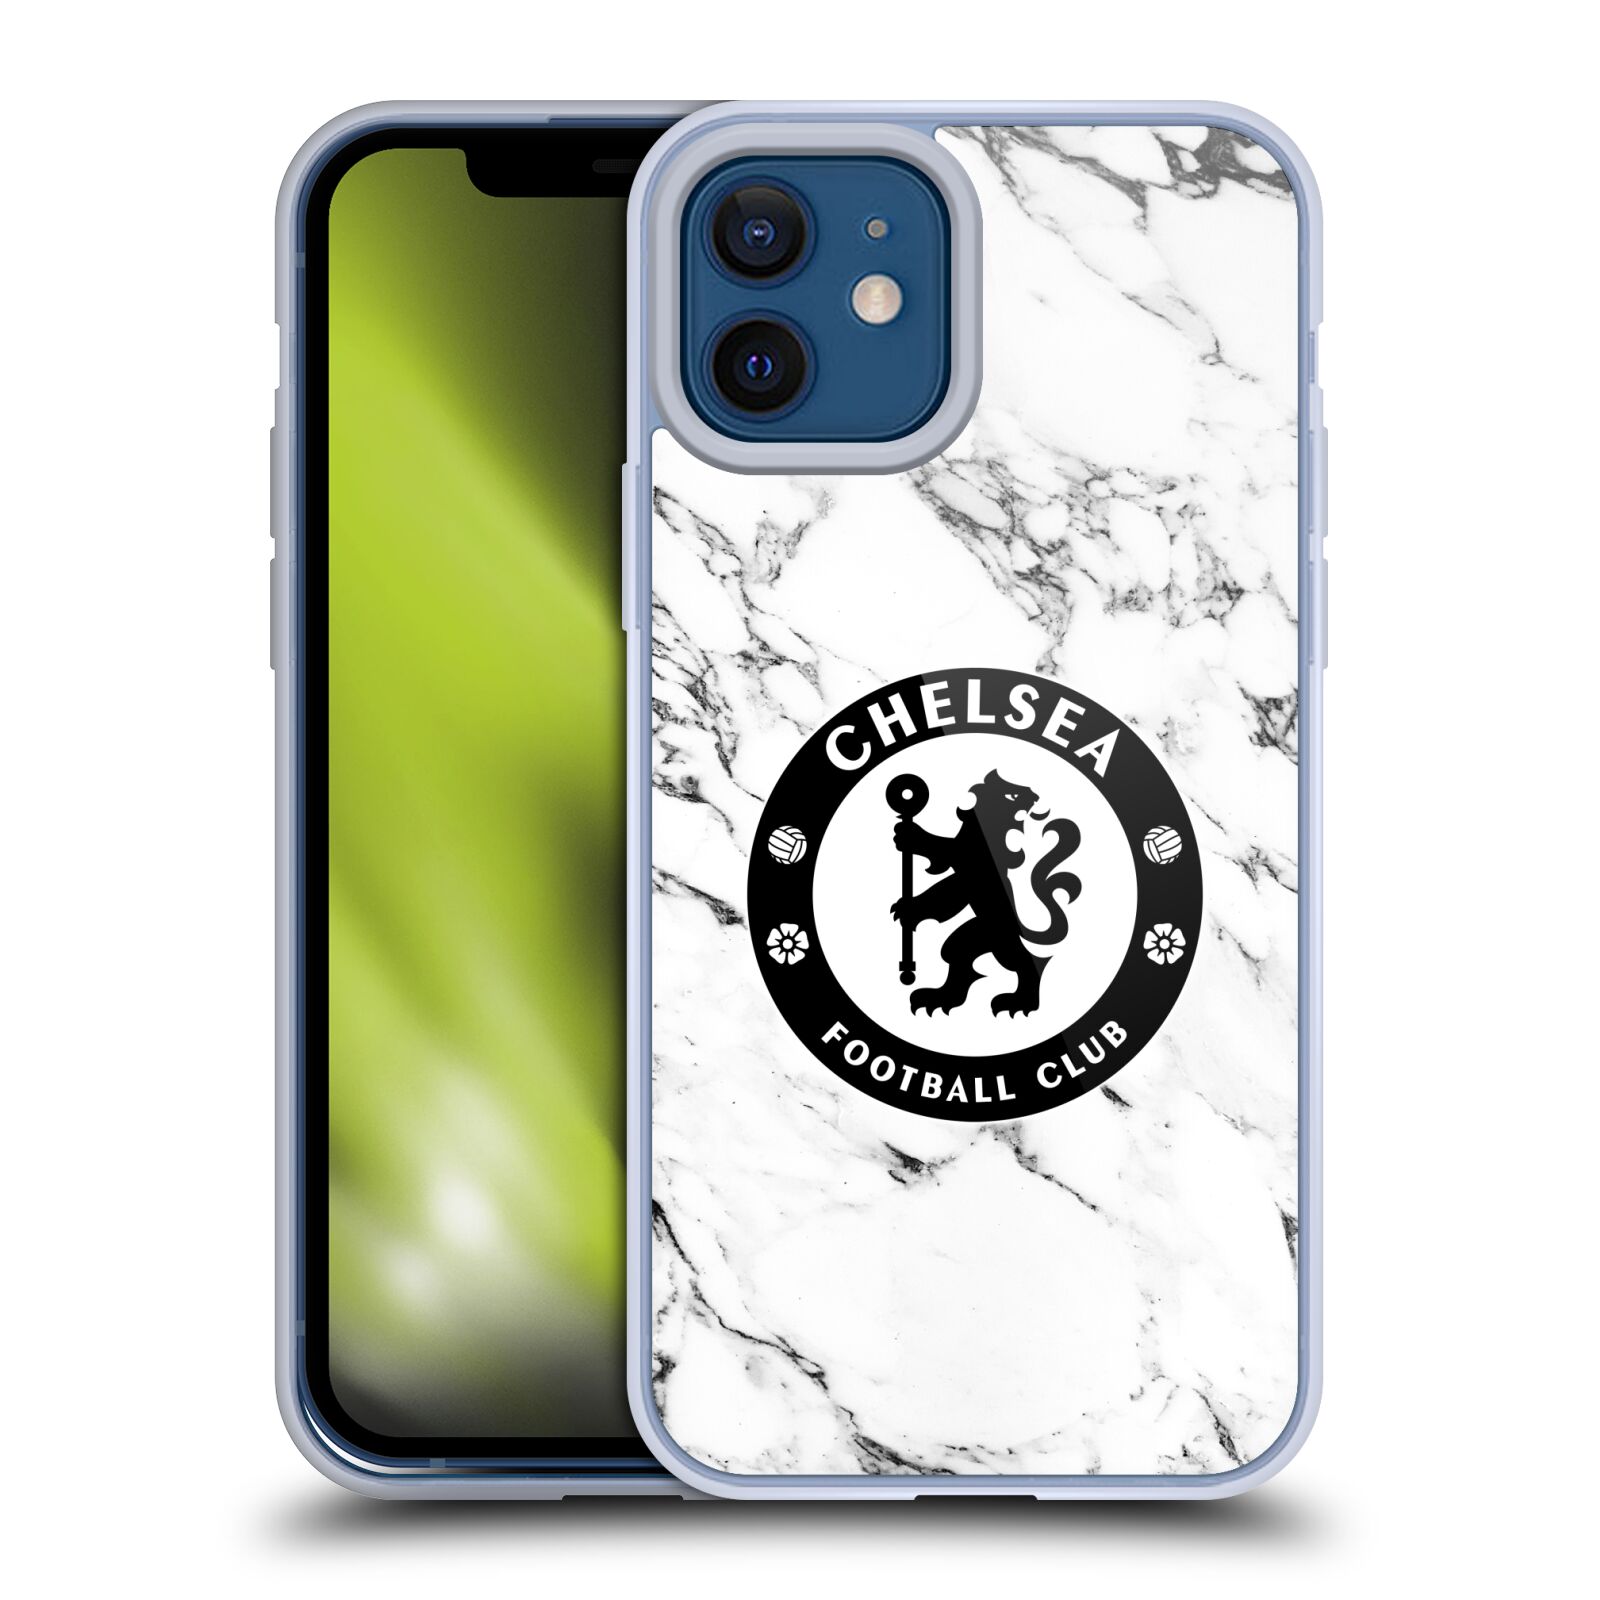 Chelsea Football Folio Wallet Funda Protectora Cubierta Para iPhone 5 6 6S 7 8 Regalo 